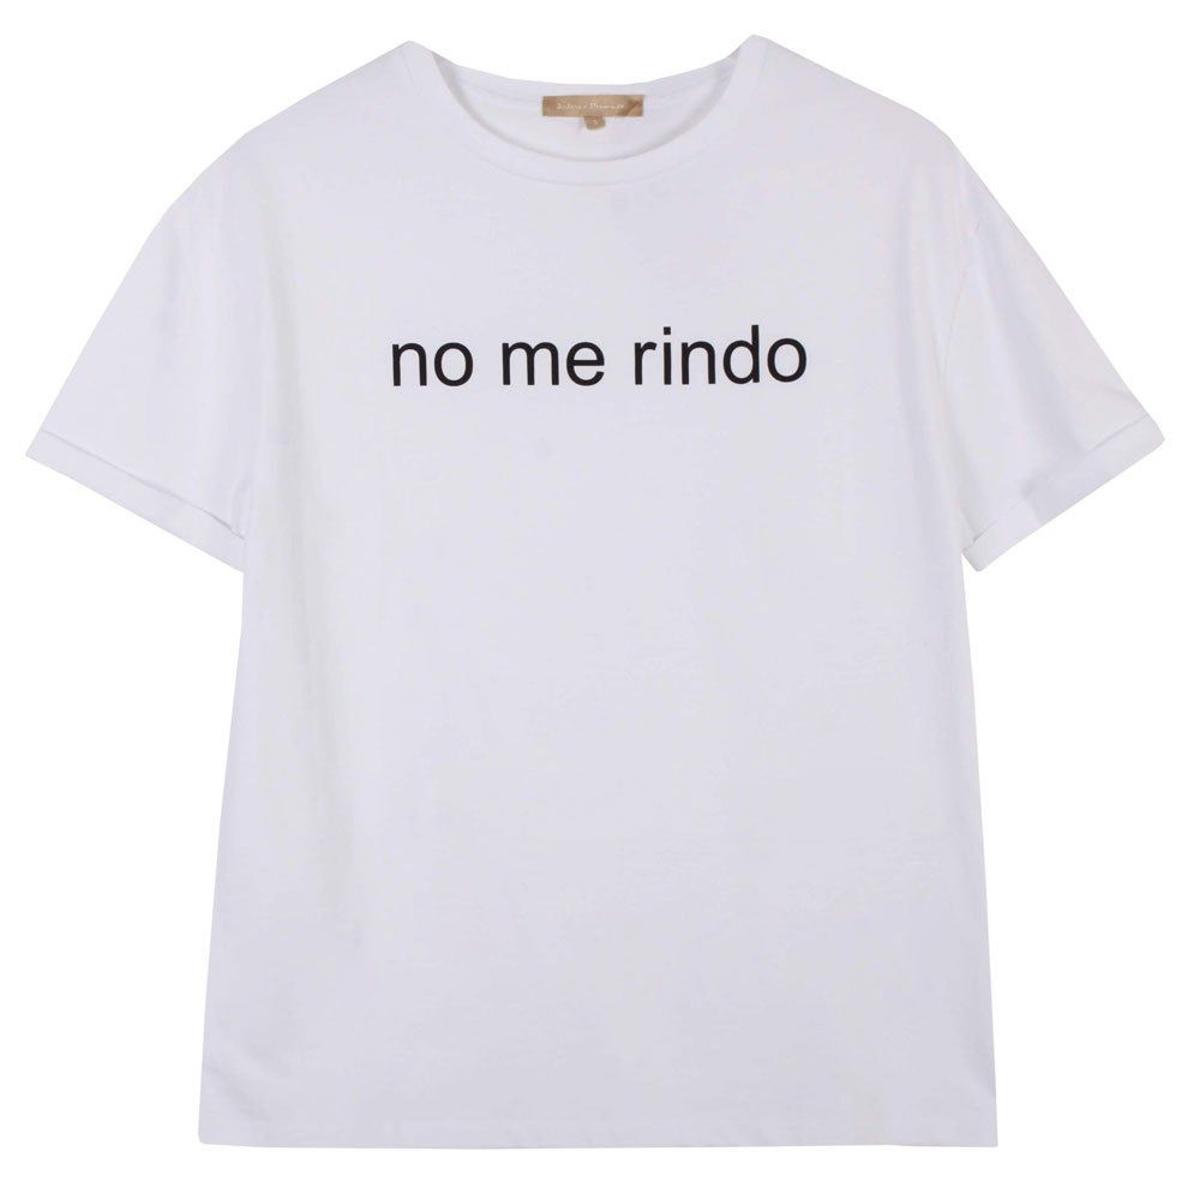 Dolores Promesas saca la camiseta 'No me rindo' por el Día de la Mujer. (Precio: 29, 90 euros)